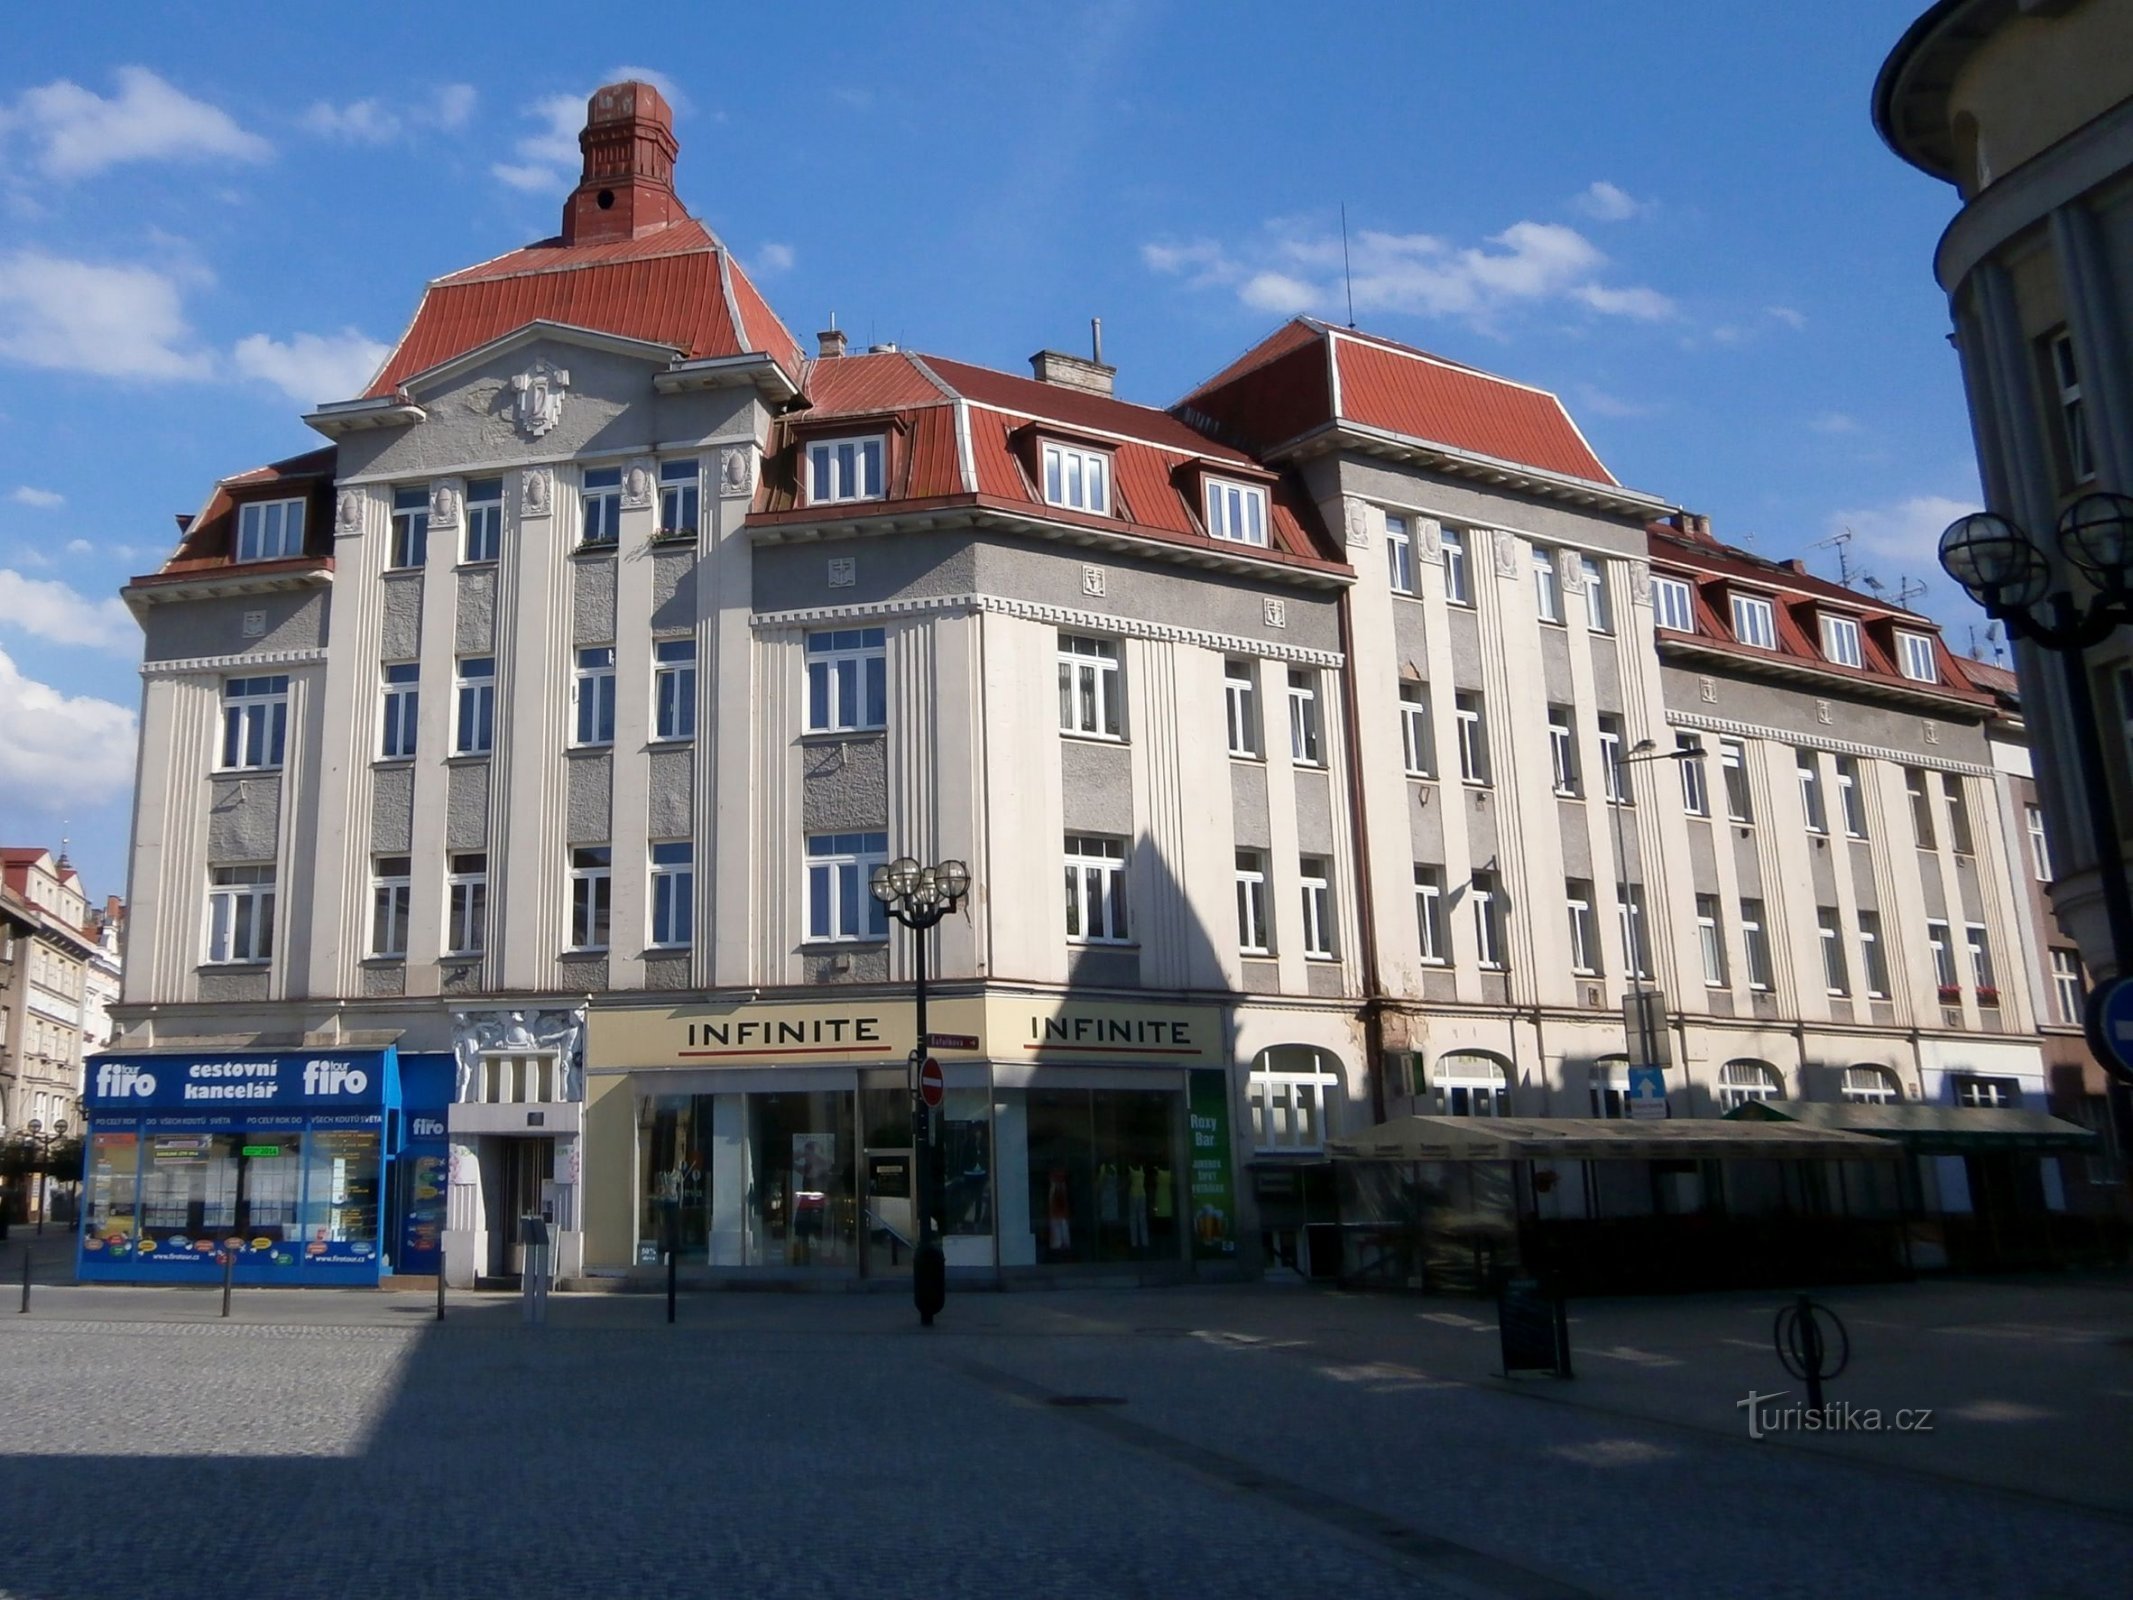 Nhà thương mại (Hradec Králové, 28.6.2014)